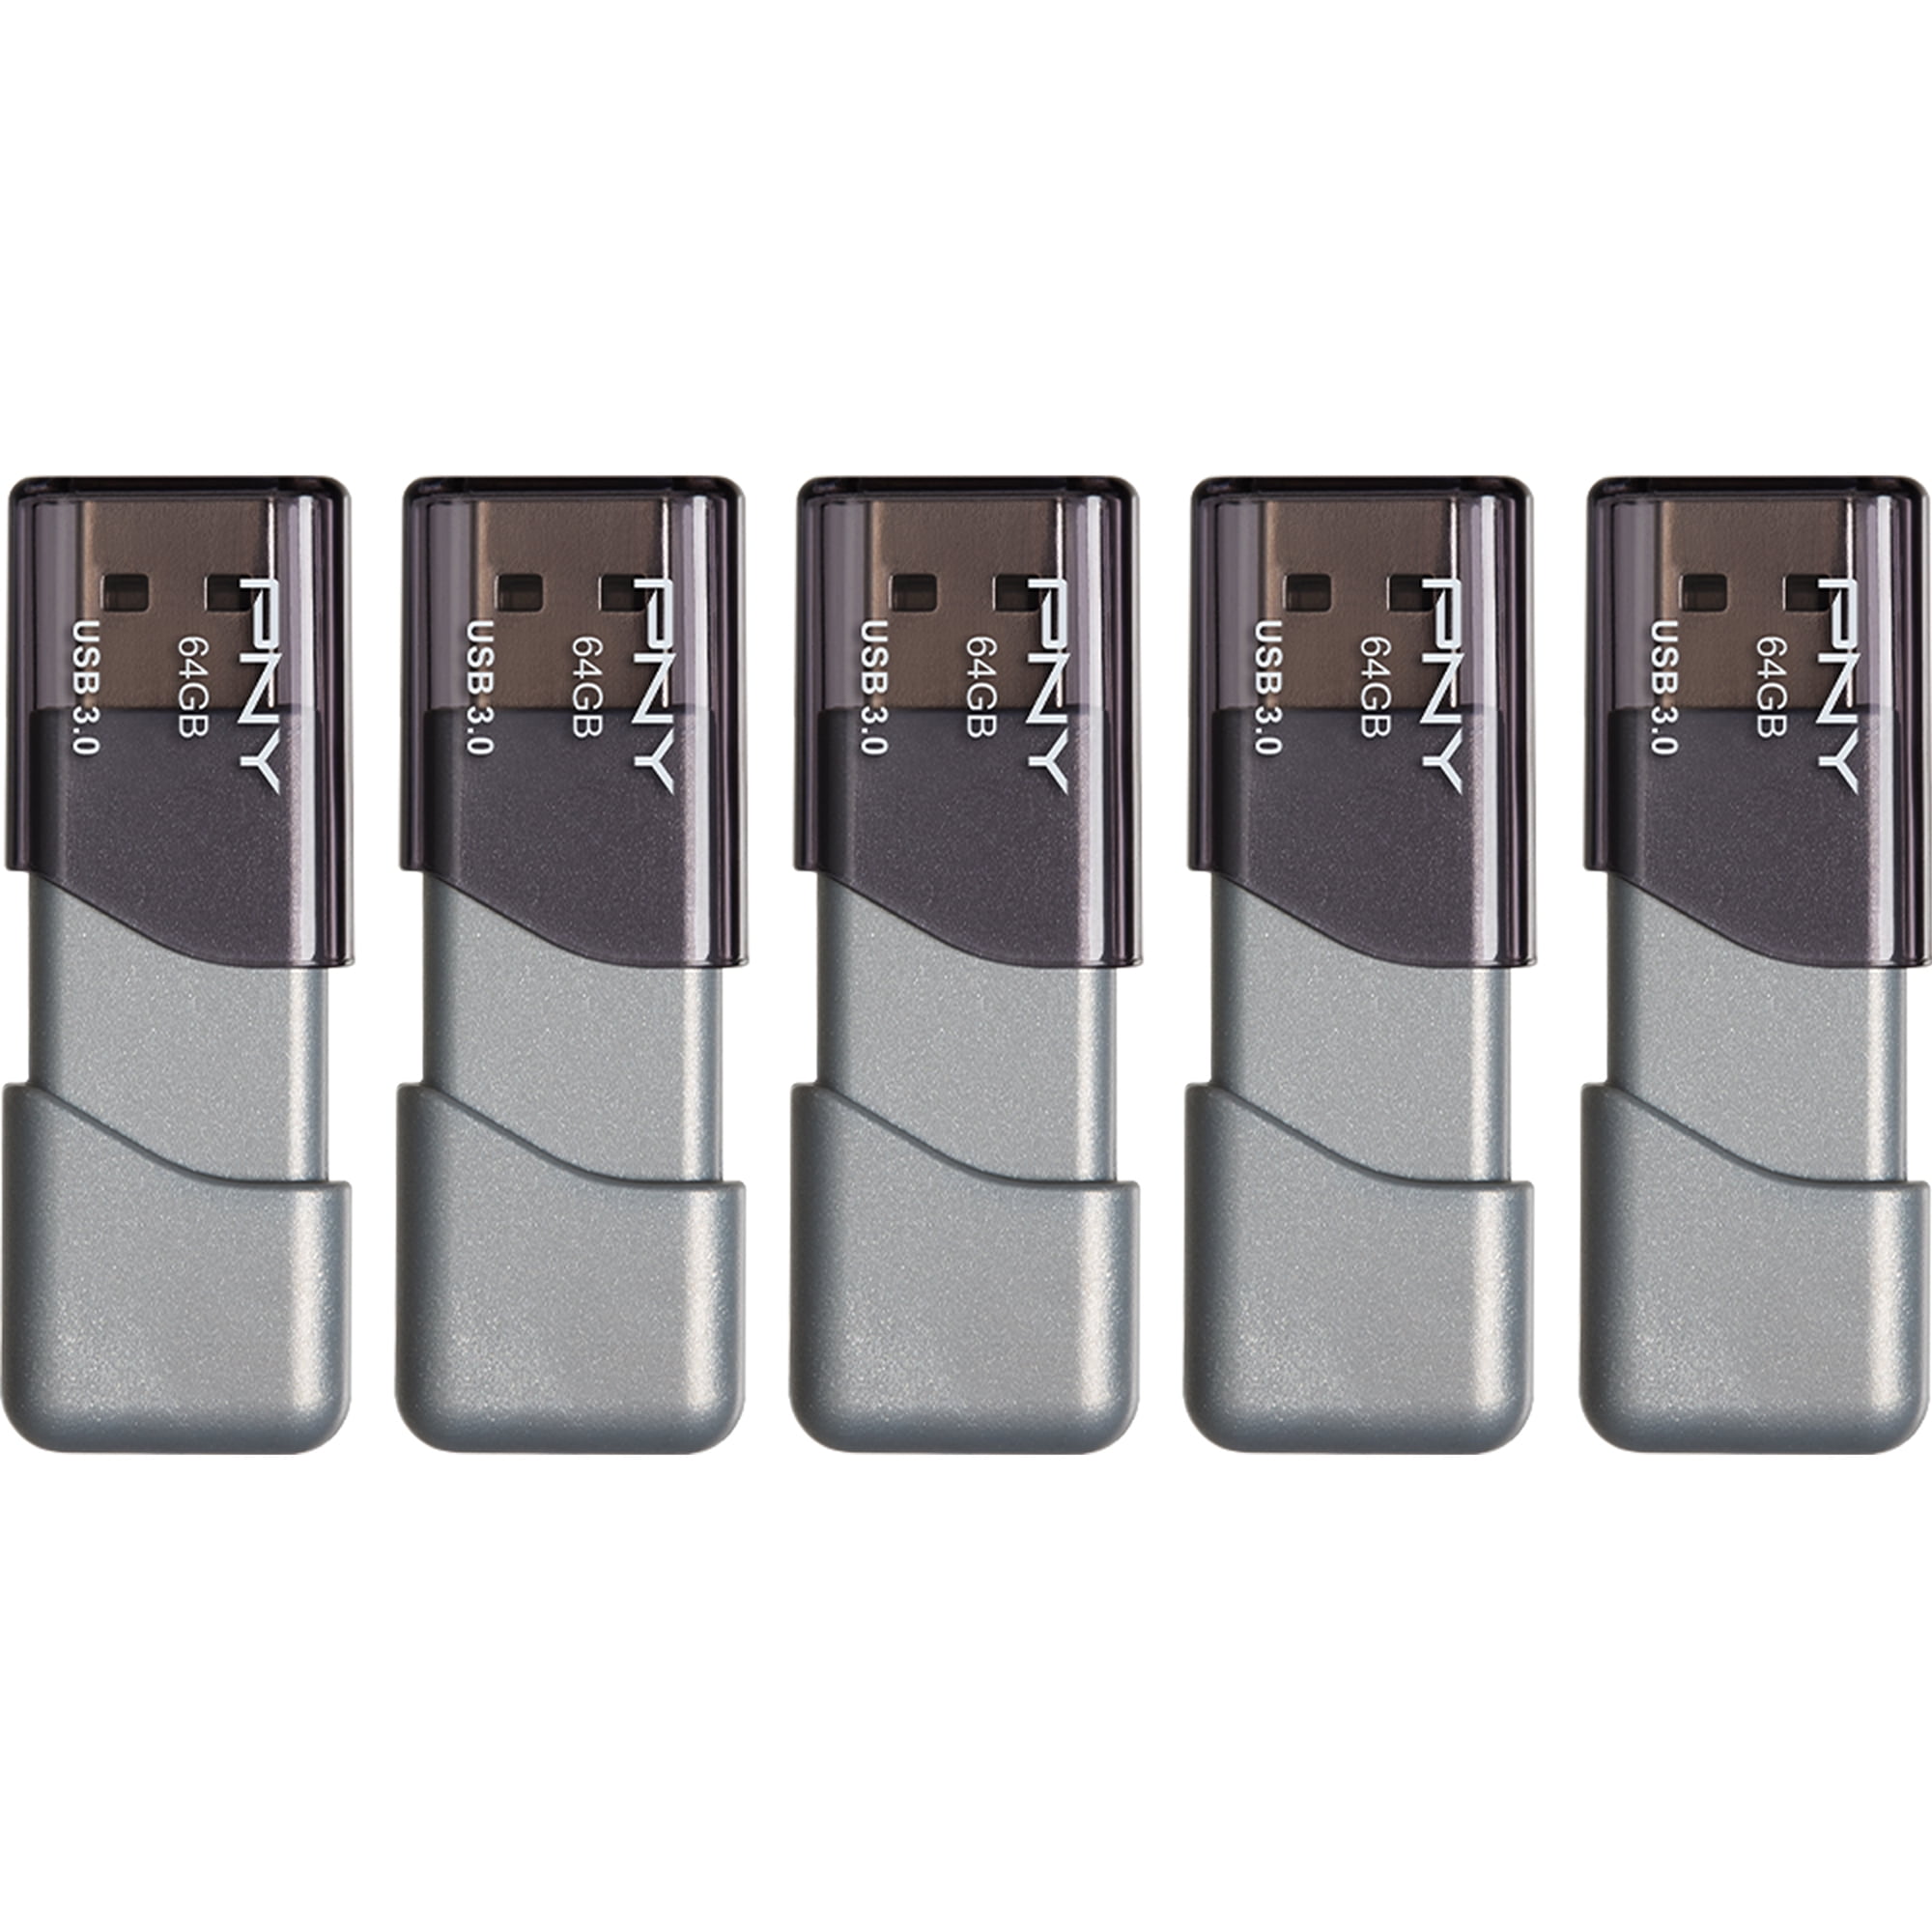 PNY 64GB Turbo Attaché 3 USB 3.0 Flash Drive 5-Pack - Walmart.com